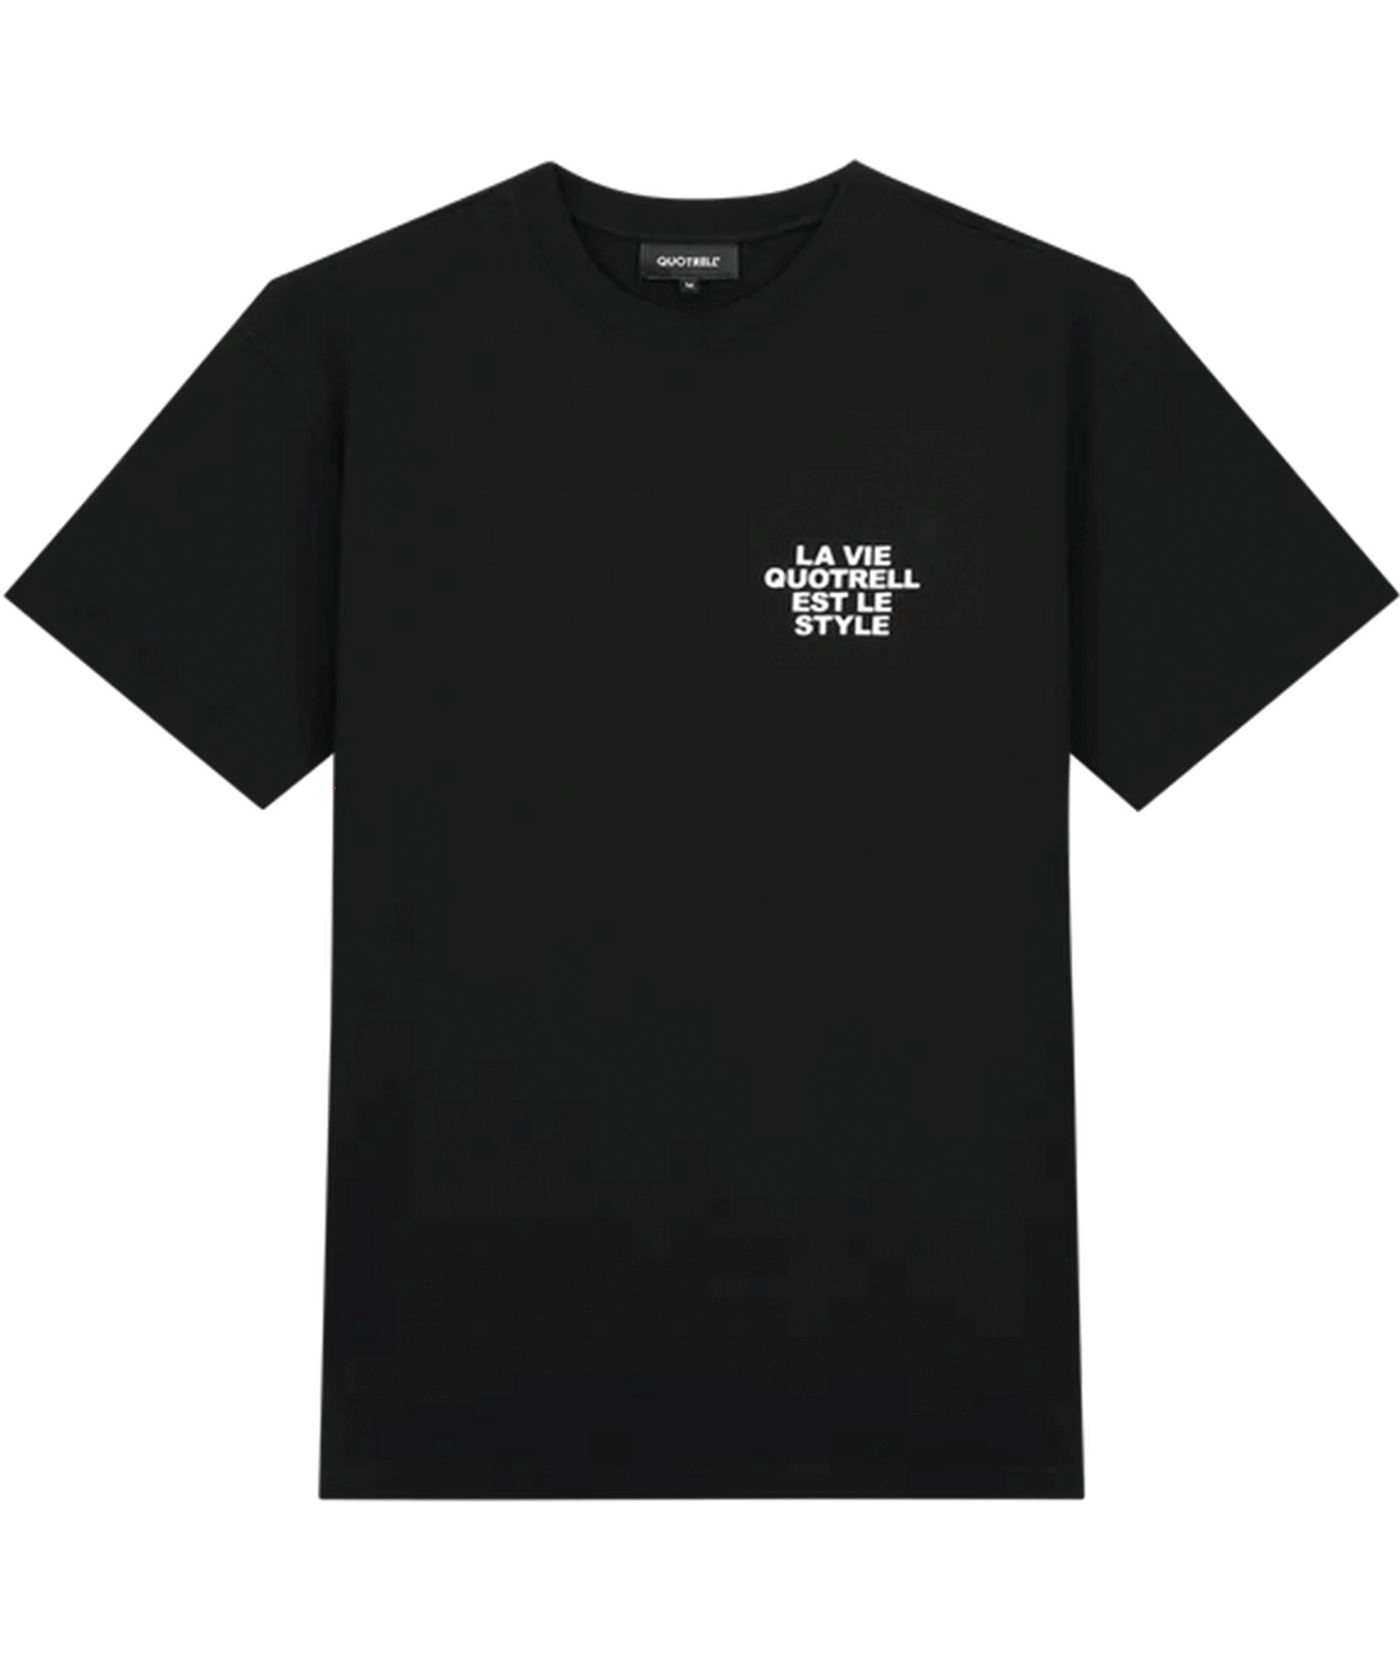 Quotrell - La Vie - T-shirt - Black/beige